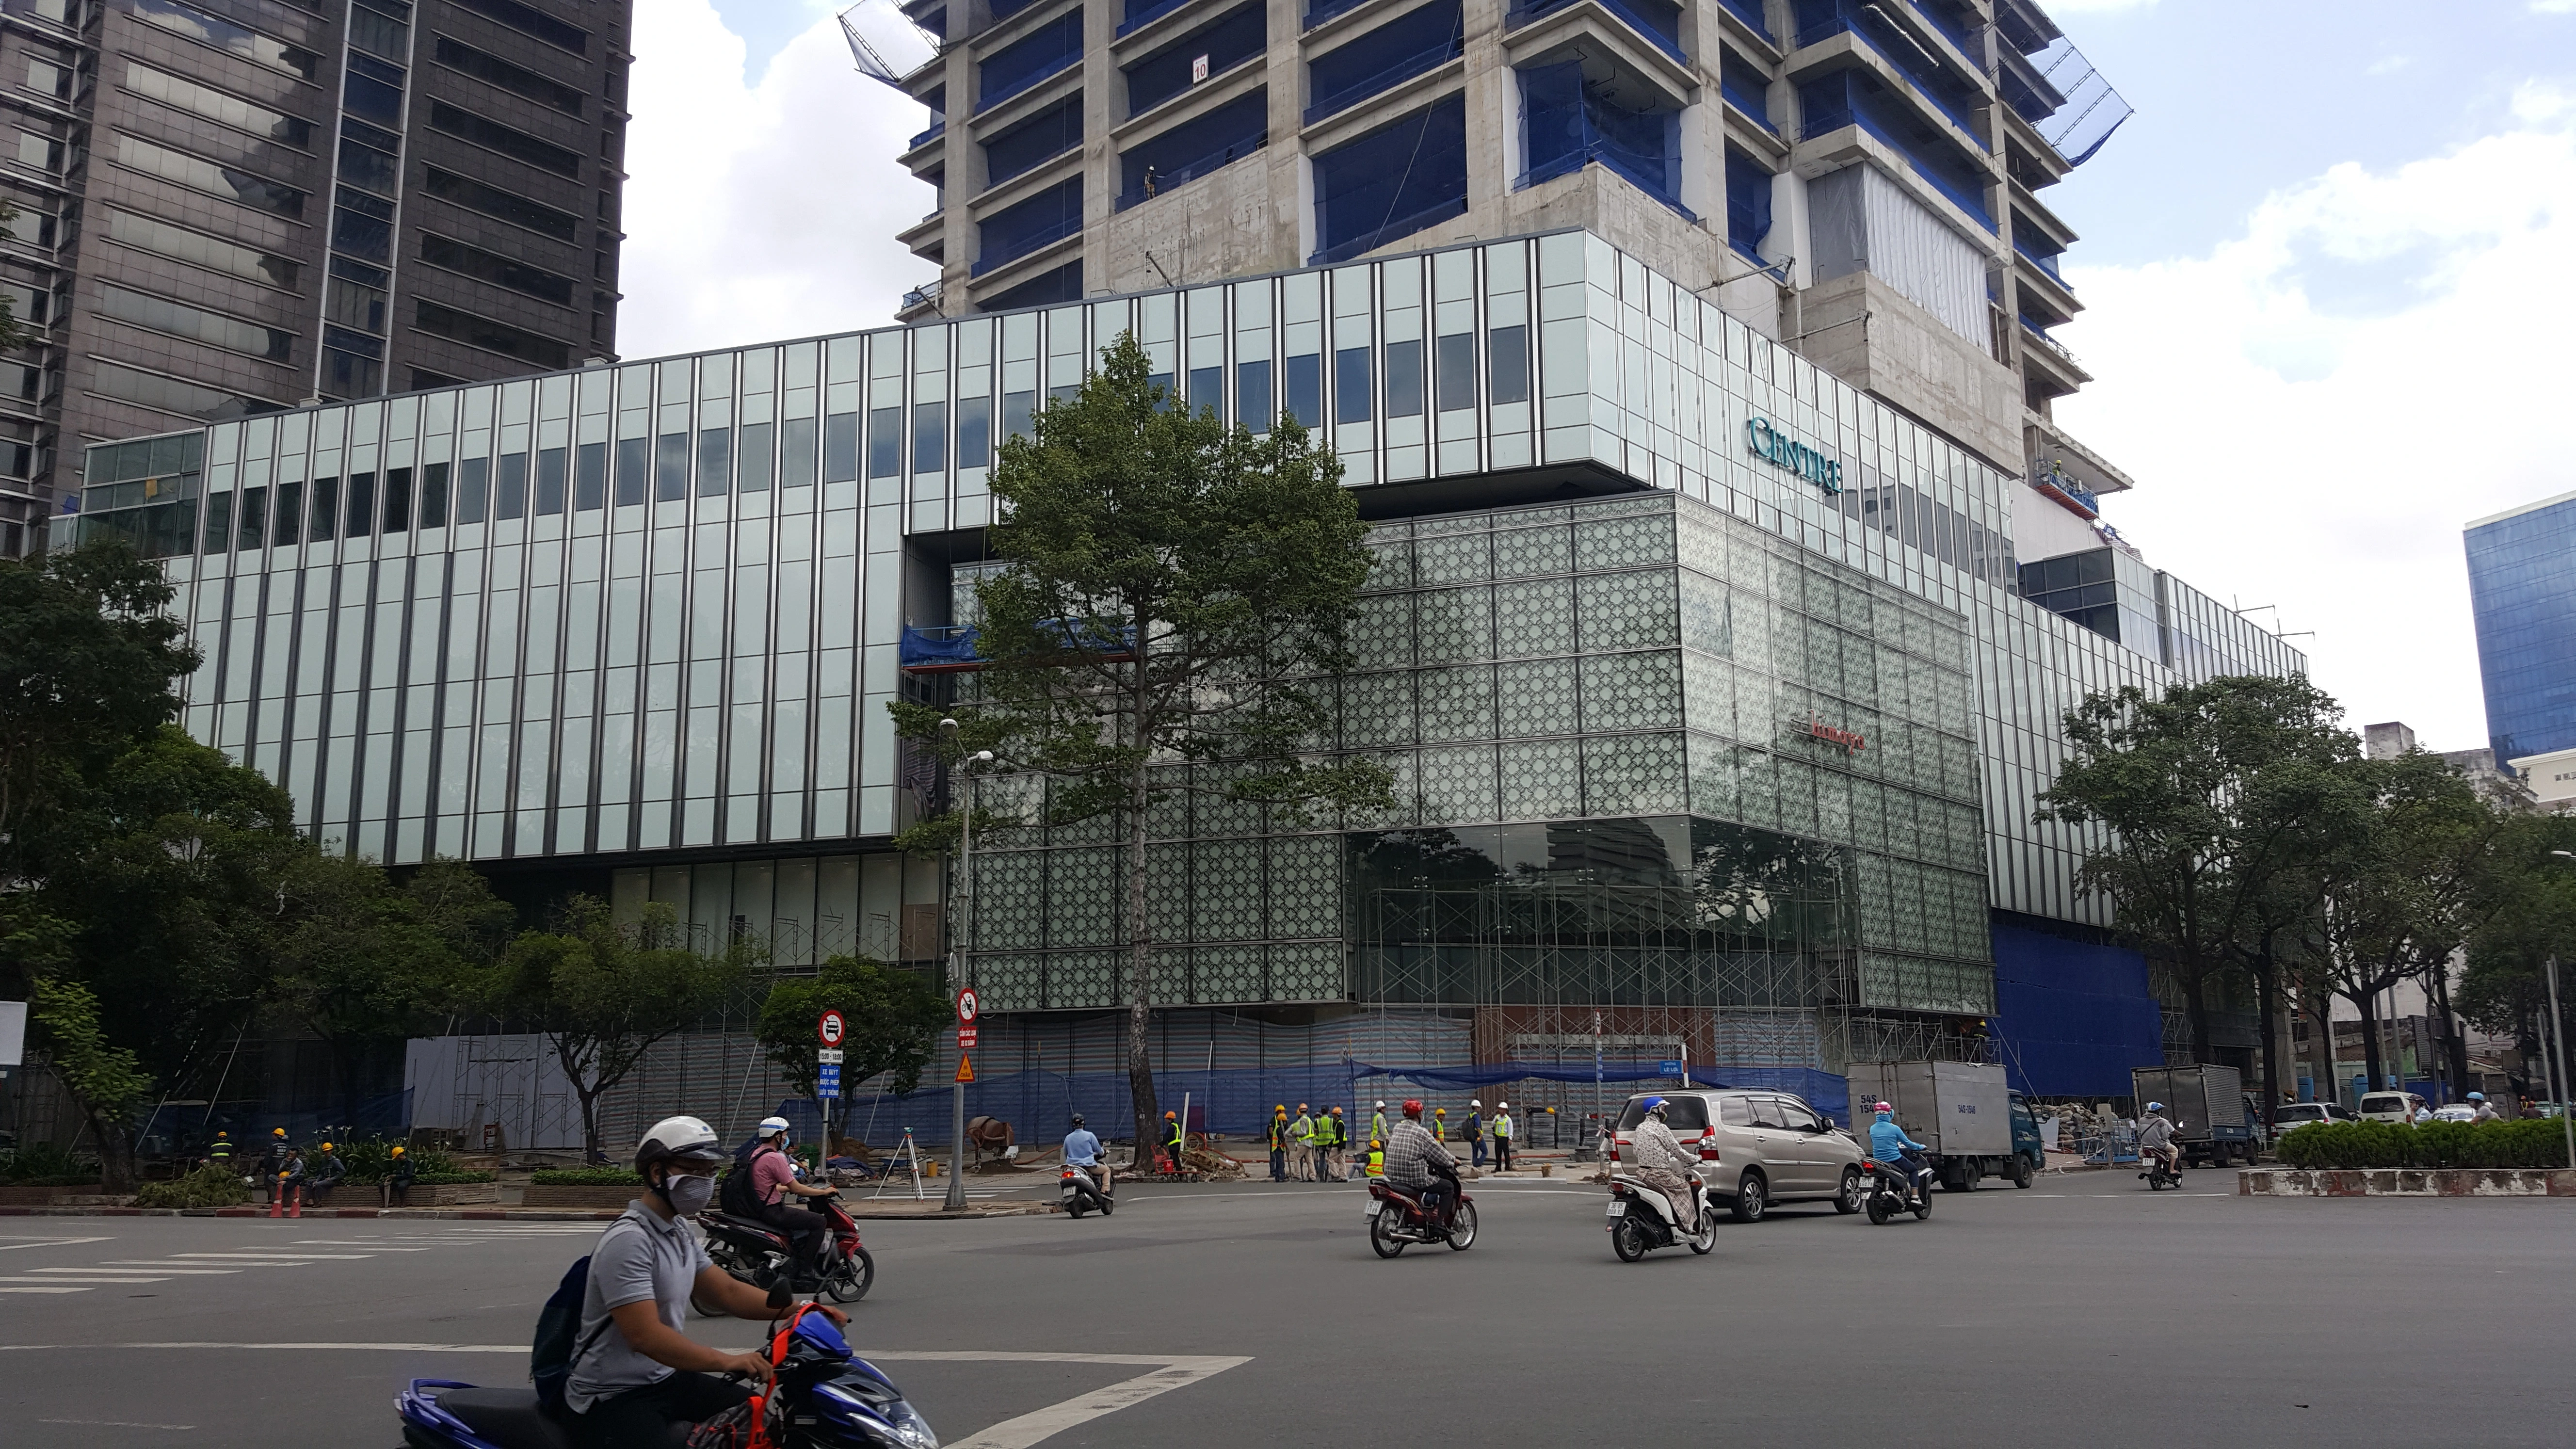 
Toàn cảnh dự án trung tâm thương mại Saigon Centre nằm ở 3 mặt tiền đường ngay trung tâm quận 1
